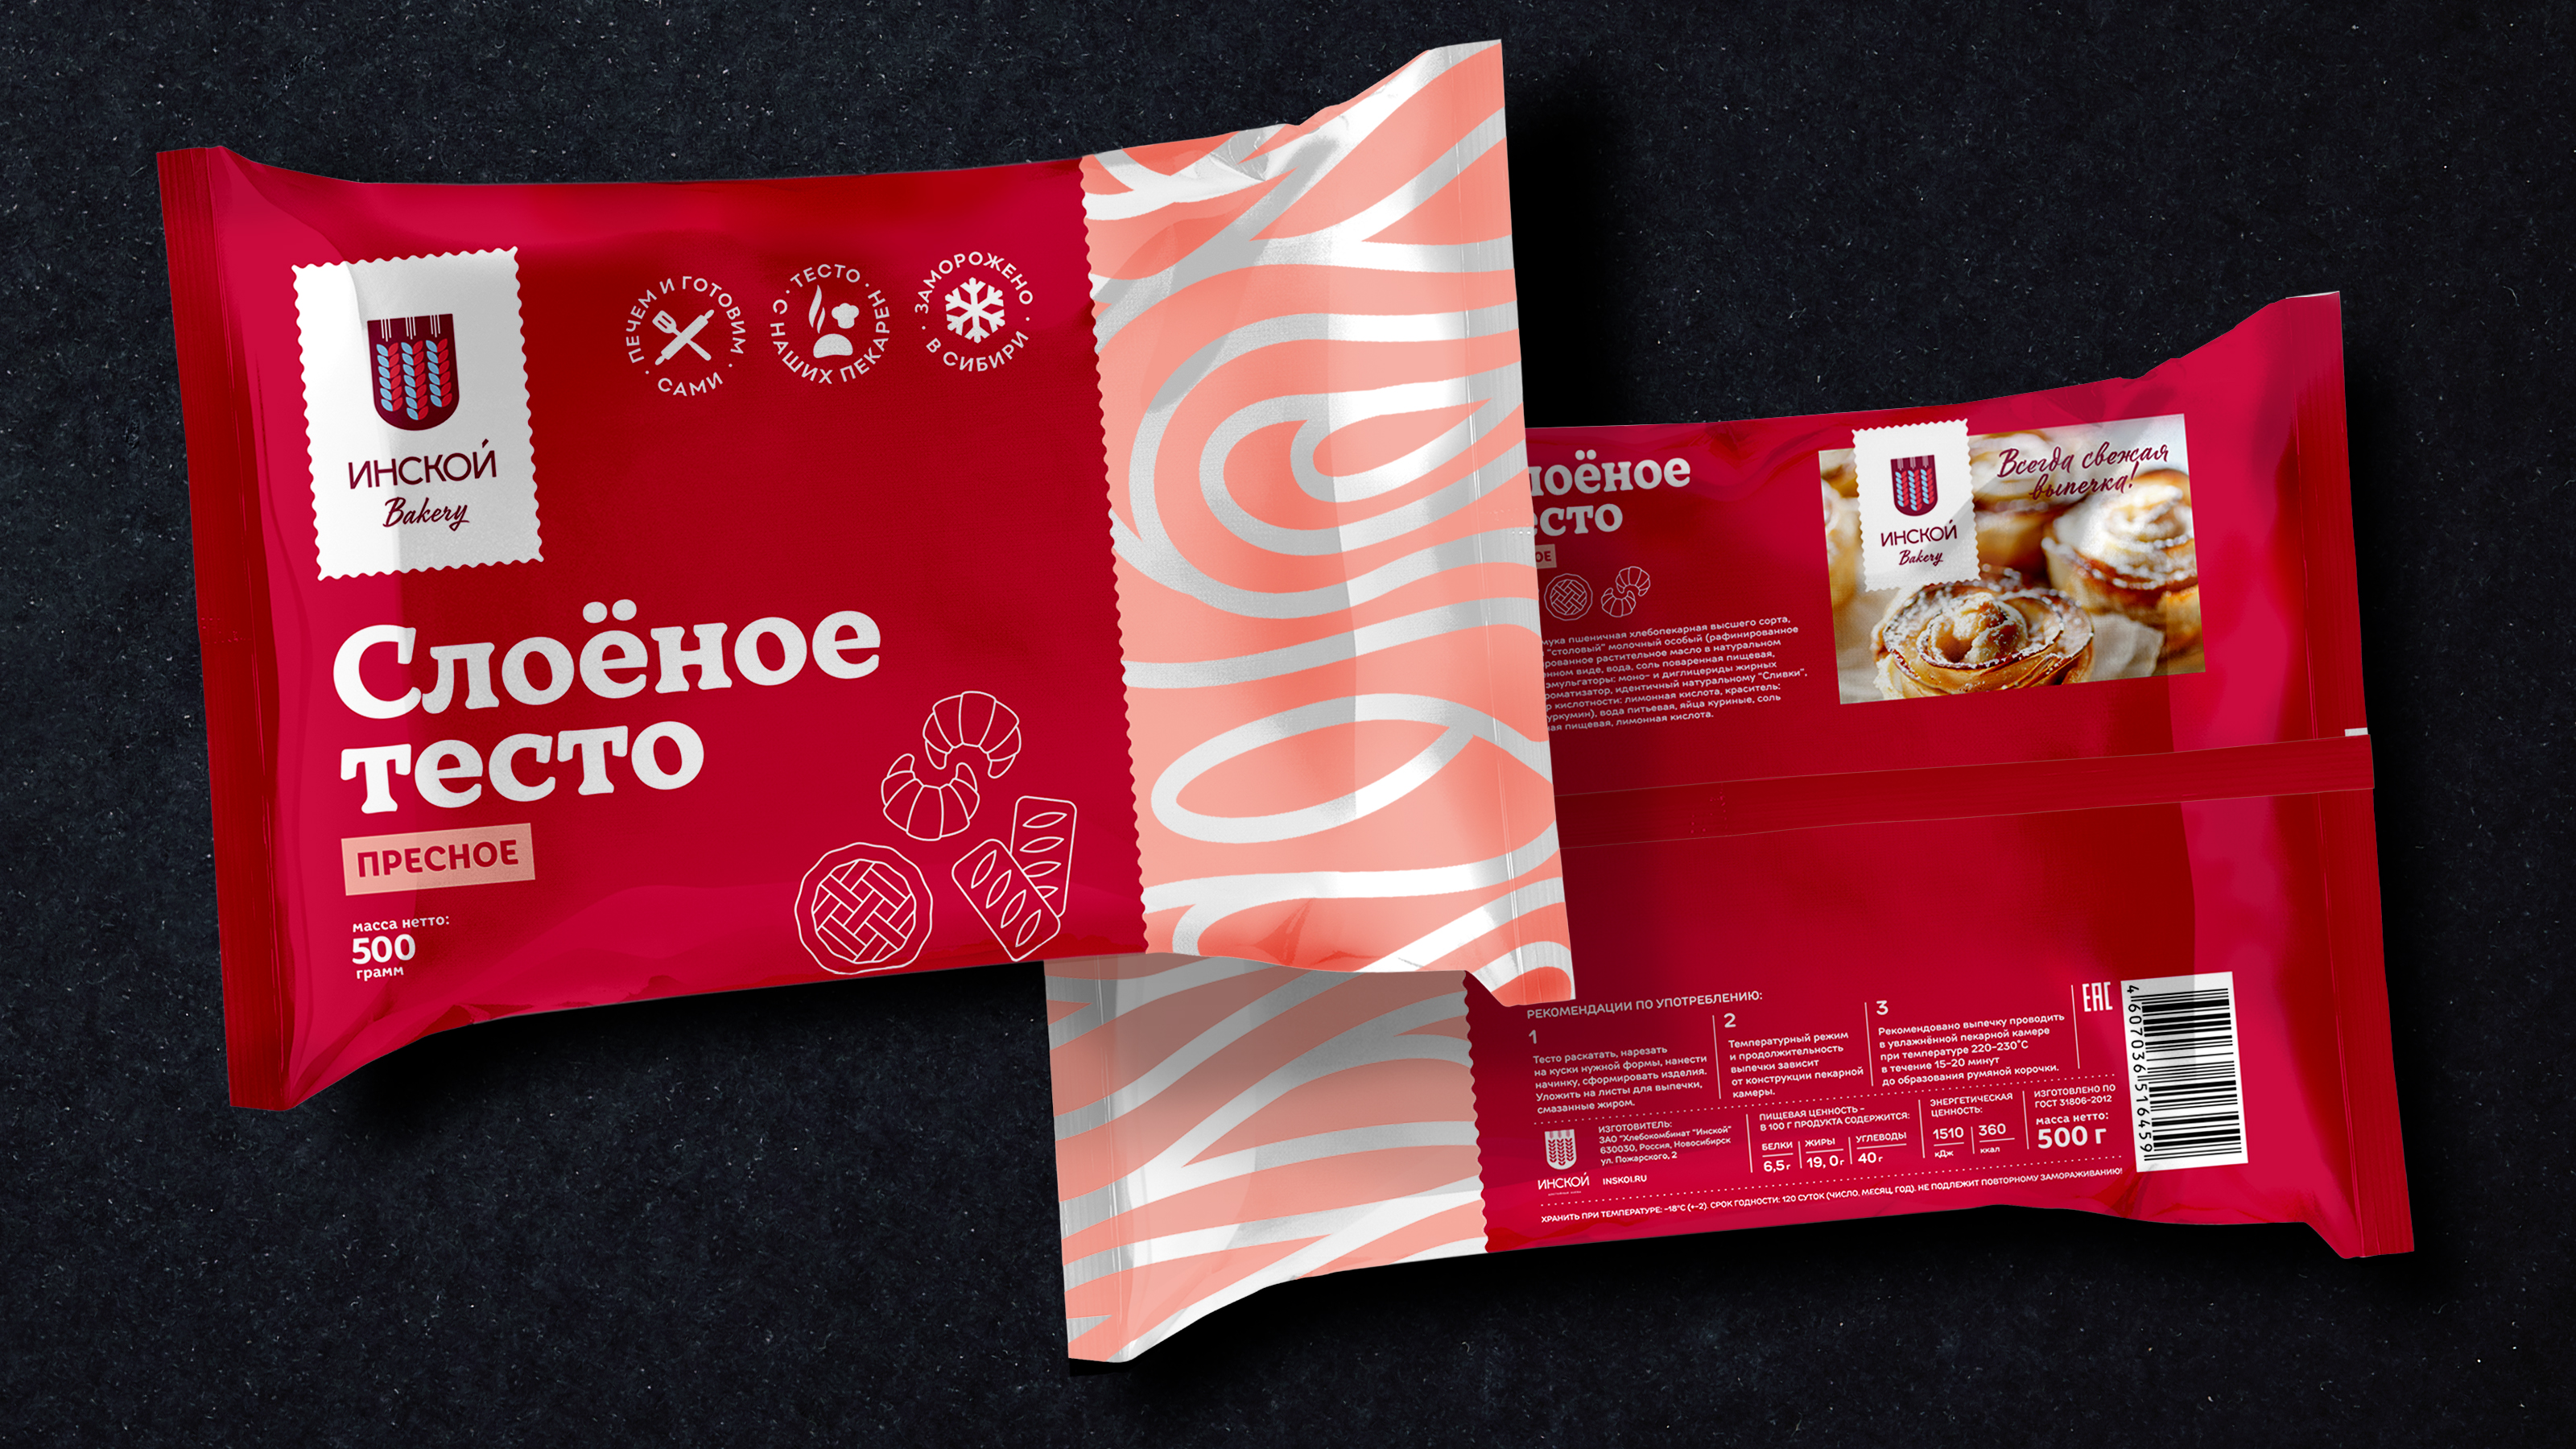 Слоеное тесто в упаковке. Инской хлебокомбинат Новосибирск продукция. Упаковка теста. Упаковка слоеного теста. Слоёное тесто бездрожжевое в упаковке.